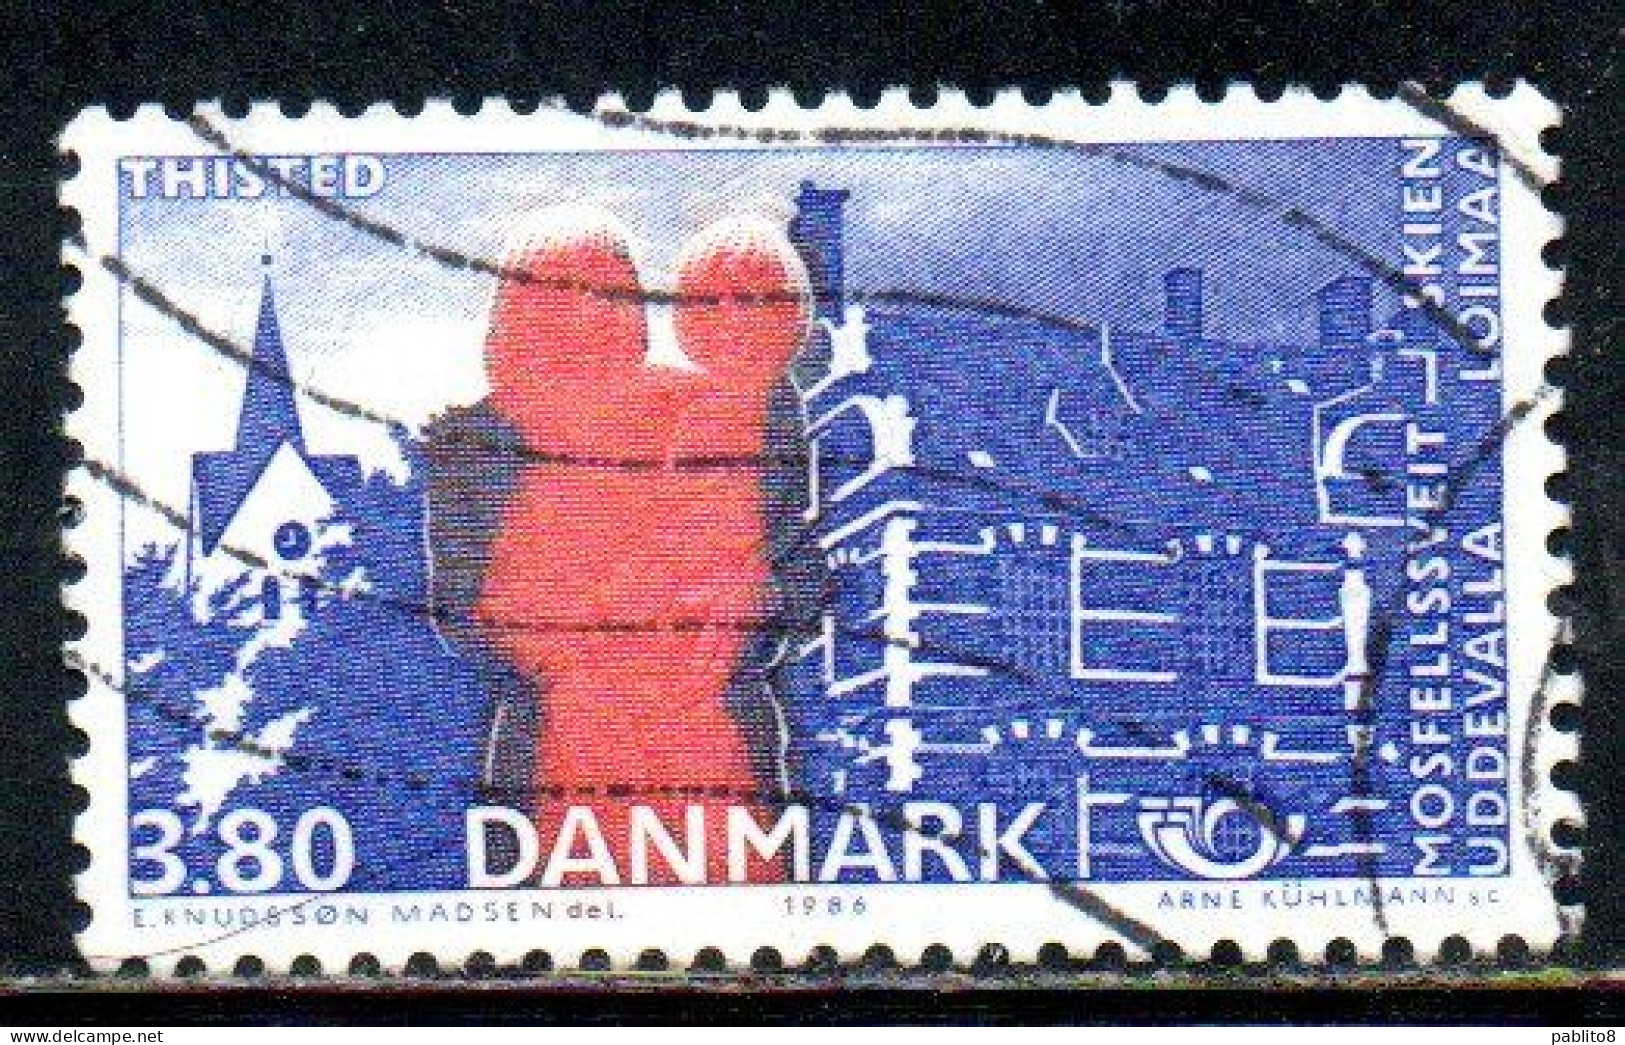 DANEMARK DANMARK DENMARK DANIMARCA 1986 NORDIC COOPERATION ISSUE THISTED CHURCH HARBOR 3.80k USED USATO OBLITERE' - Oblitérés